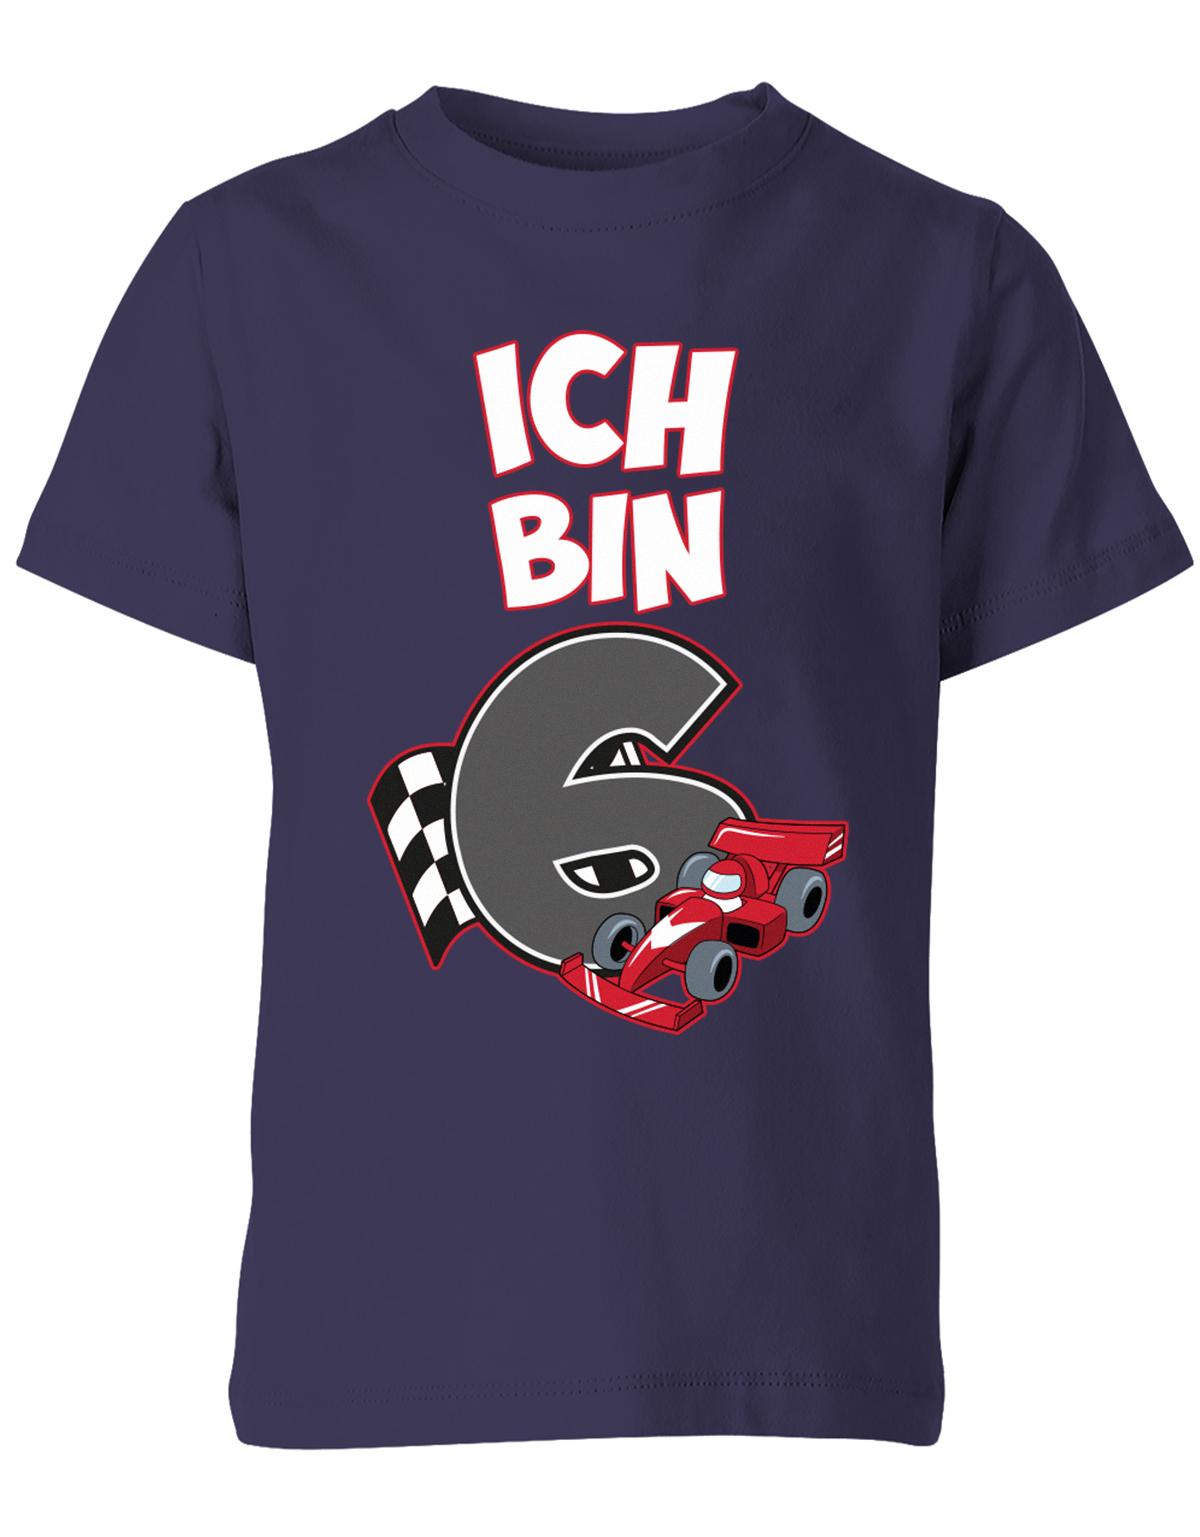 ich-bin-6-autorennen-rennwagen-geburtstag-rennfahrer-kinder-shirt-navy